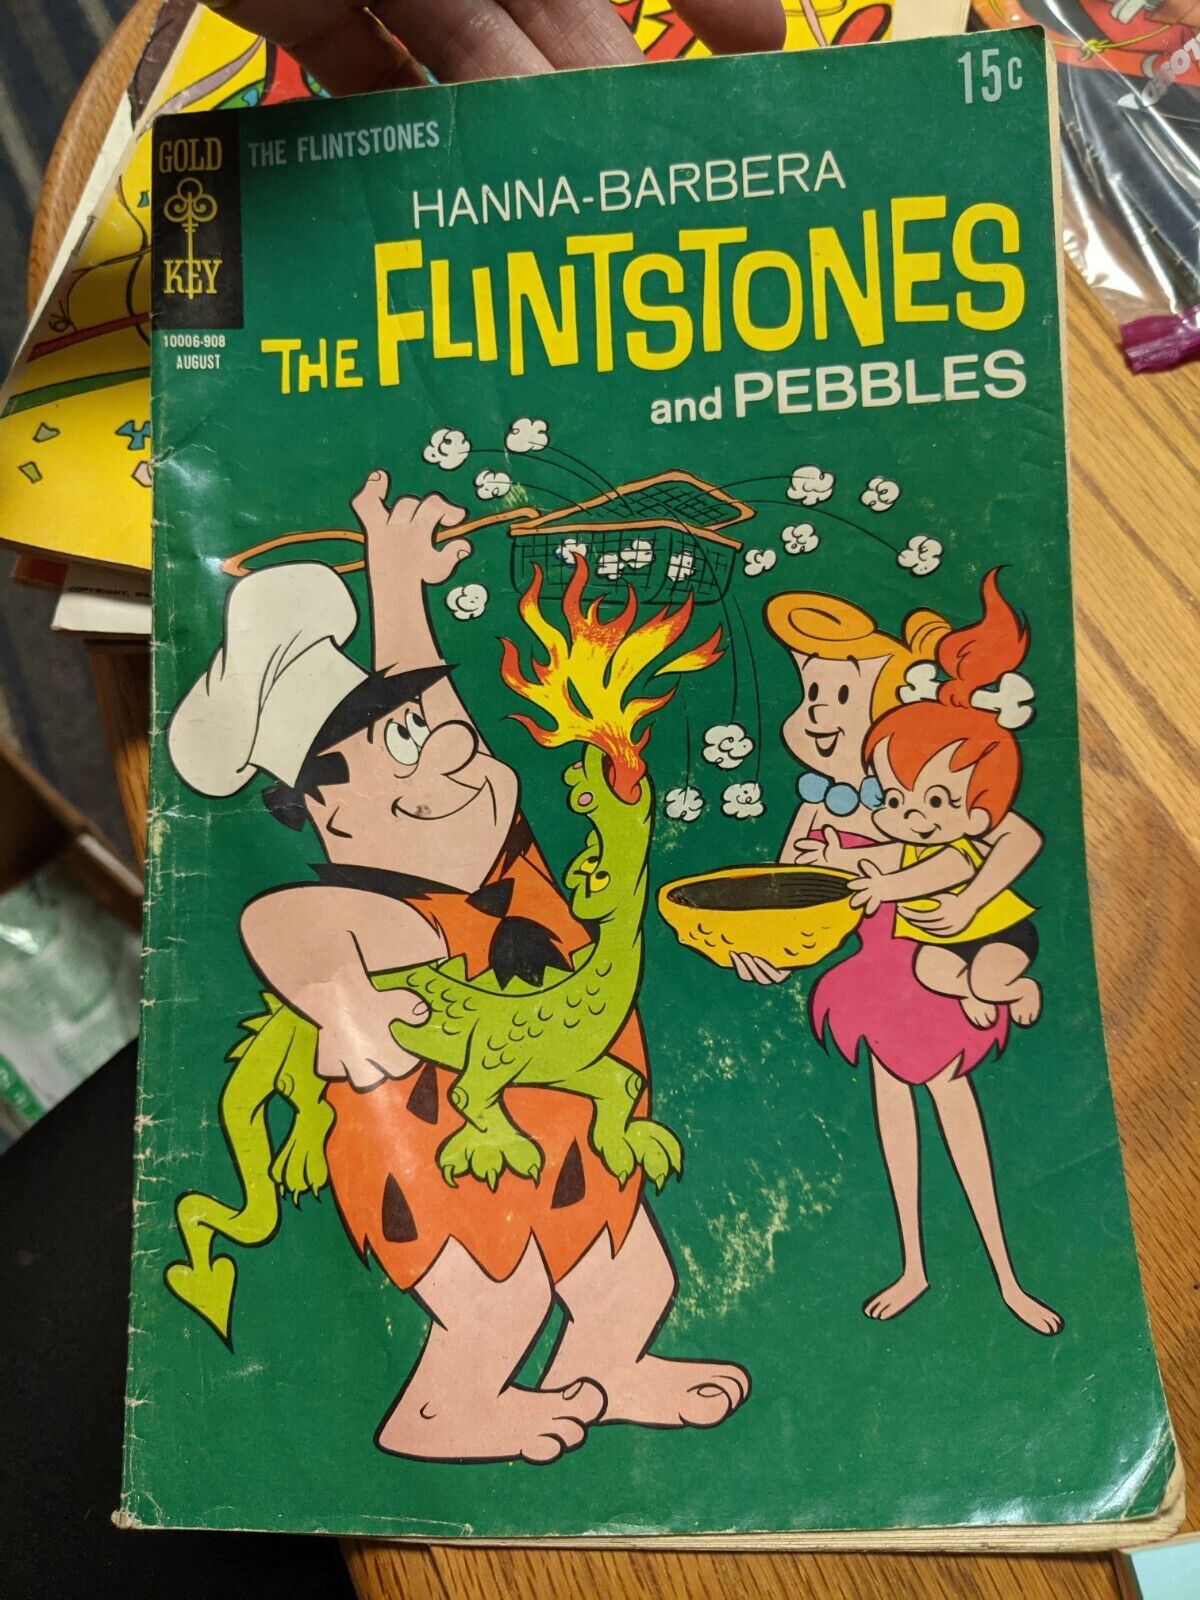 The Flintstones and Pebbles #53 Aug. 1969 Gold Key Comics - Hanna-Barbera